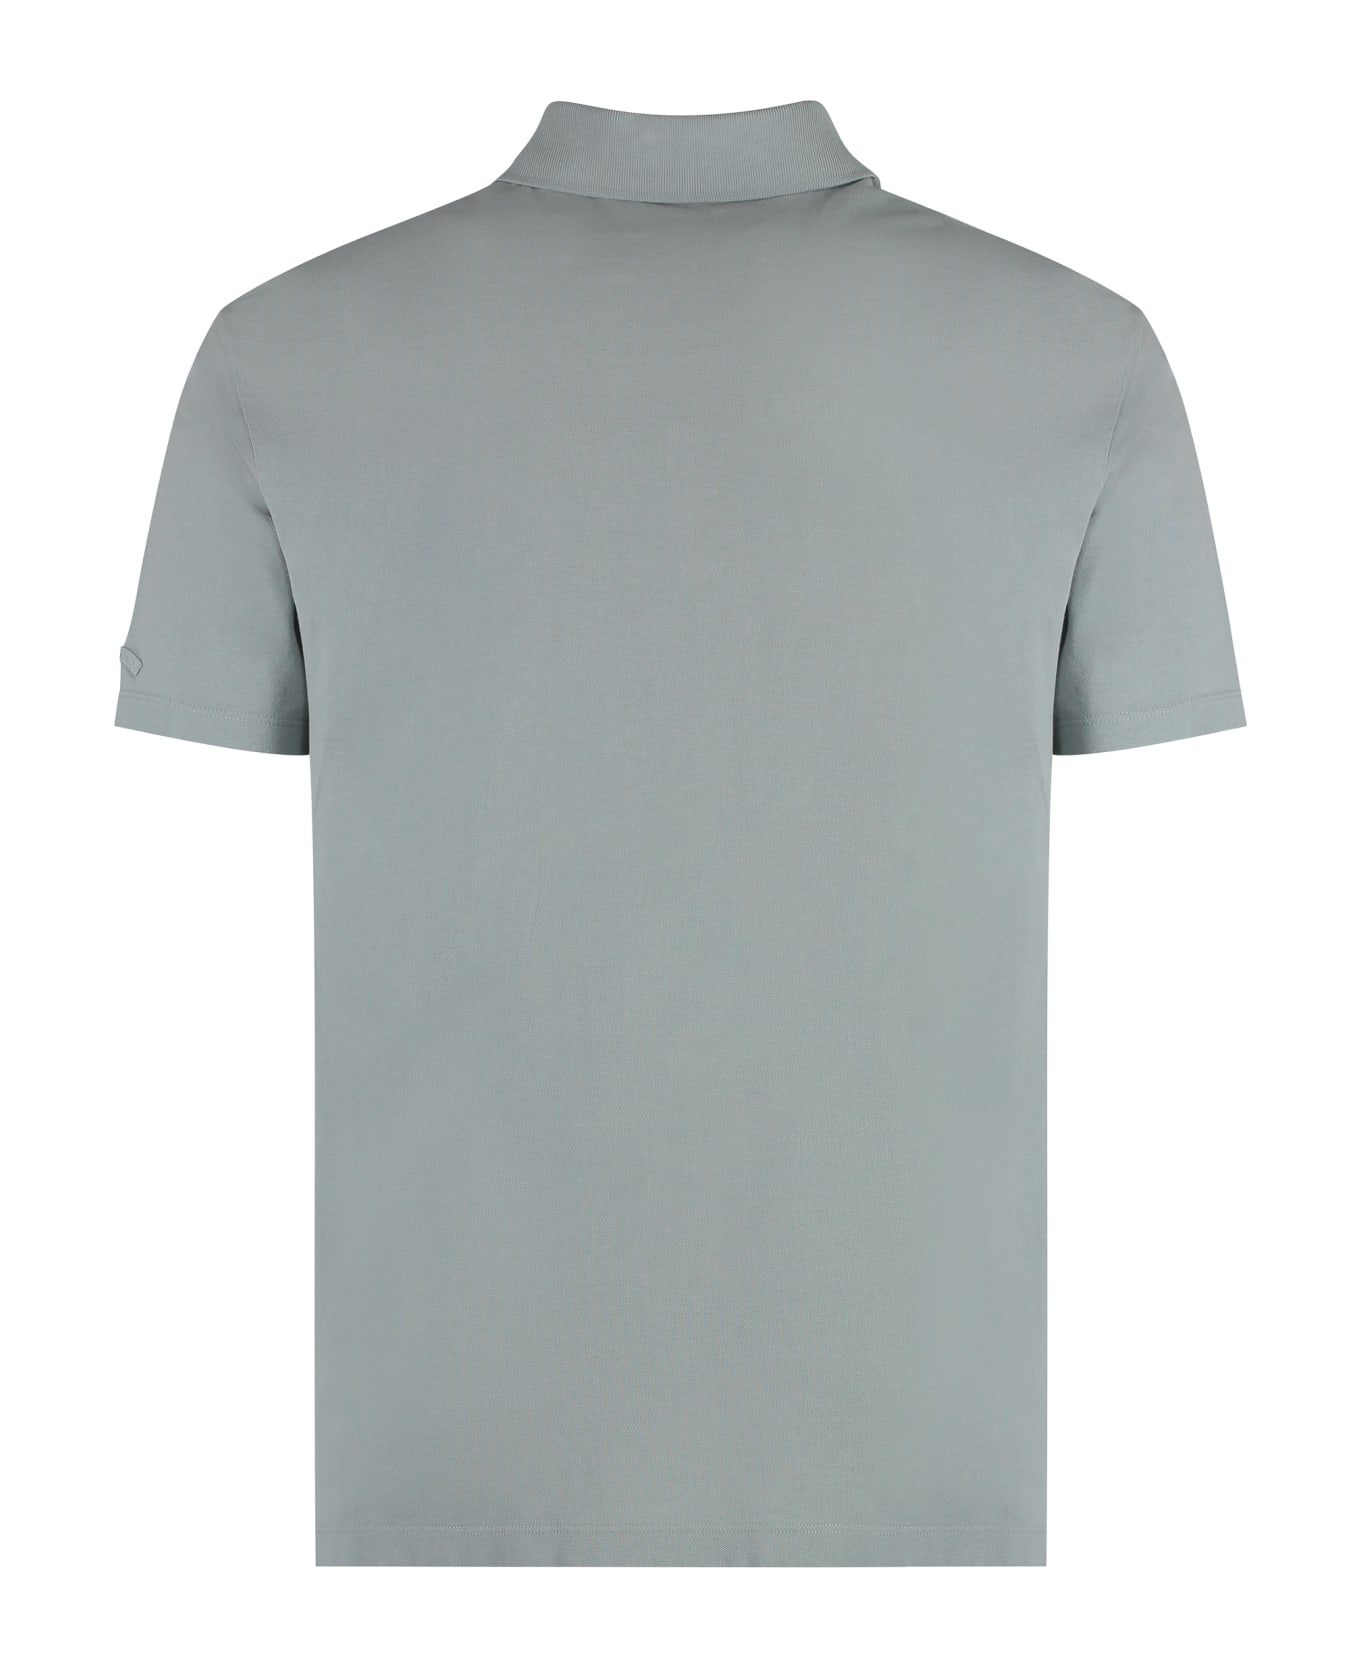 Paul&Shark Short Sleeve Cotton Polo Shirt - grey